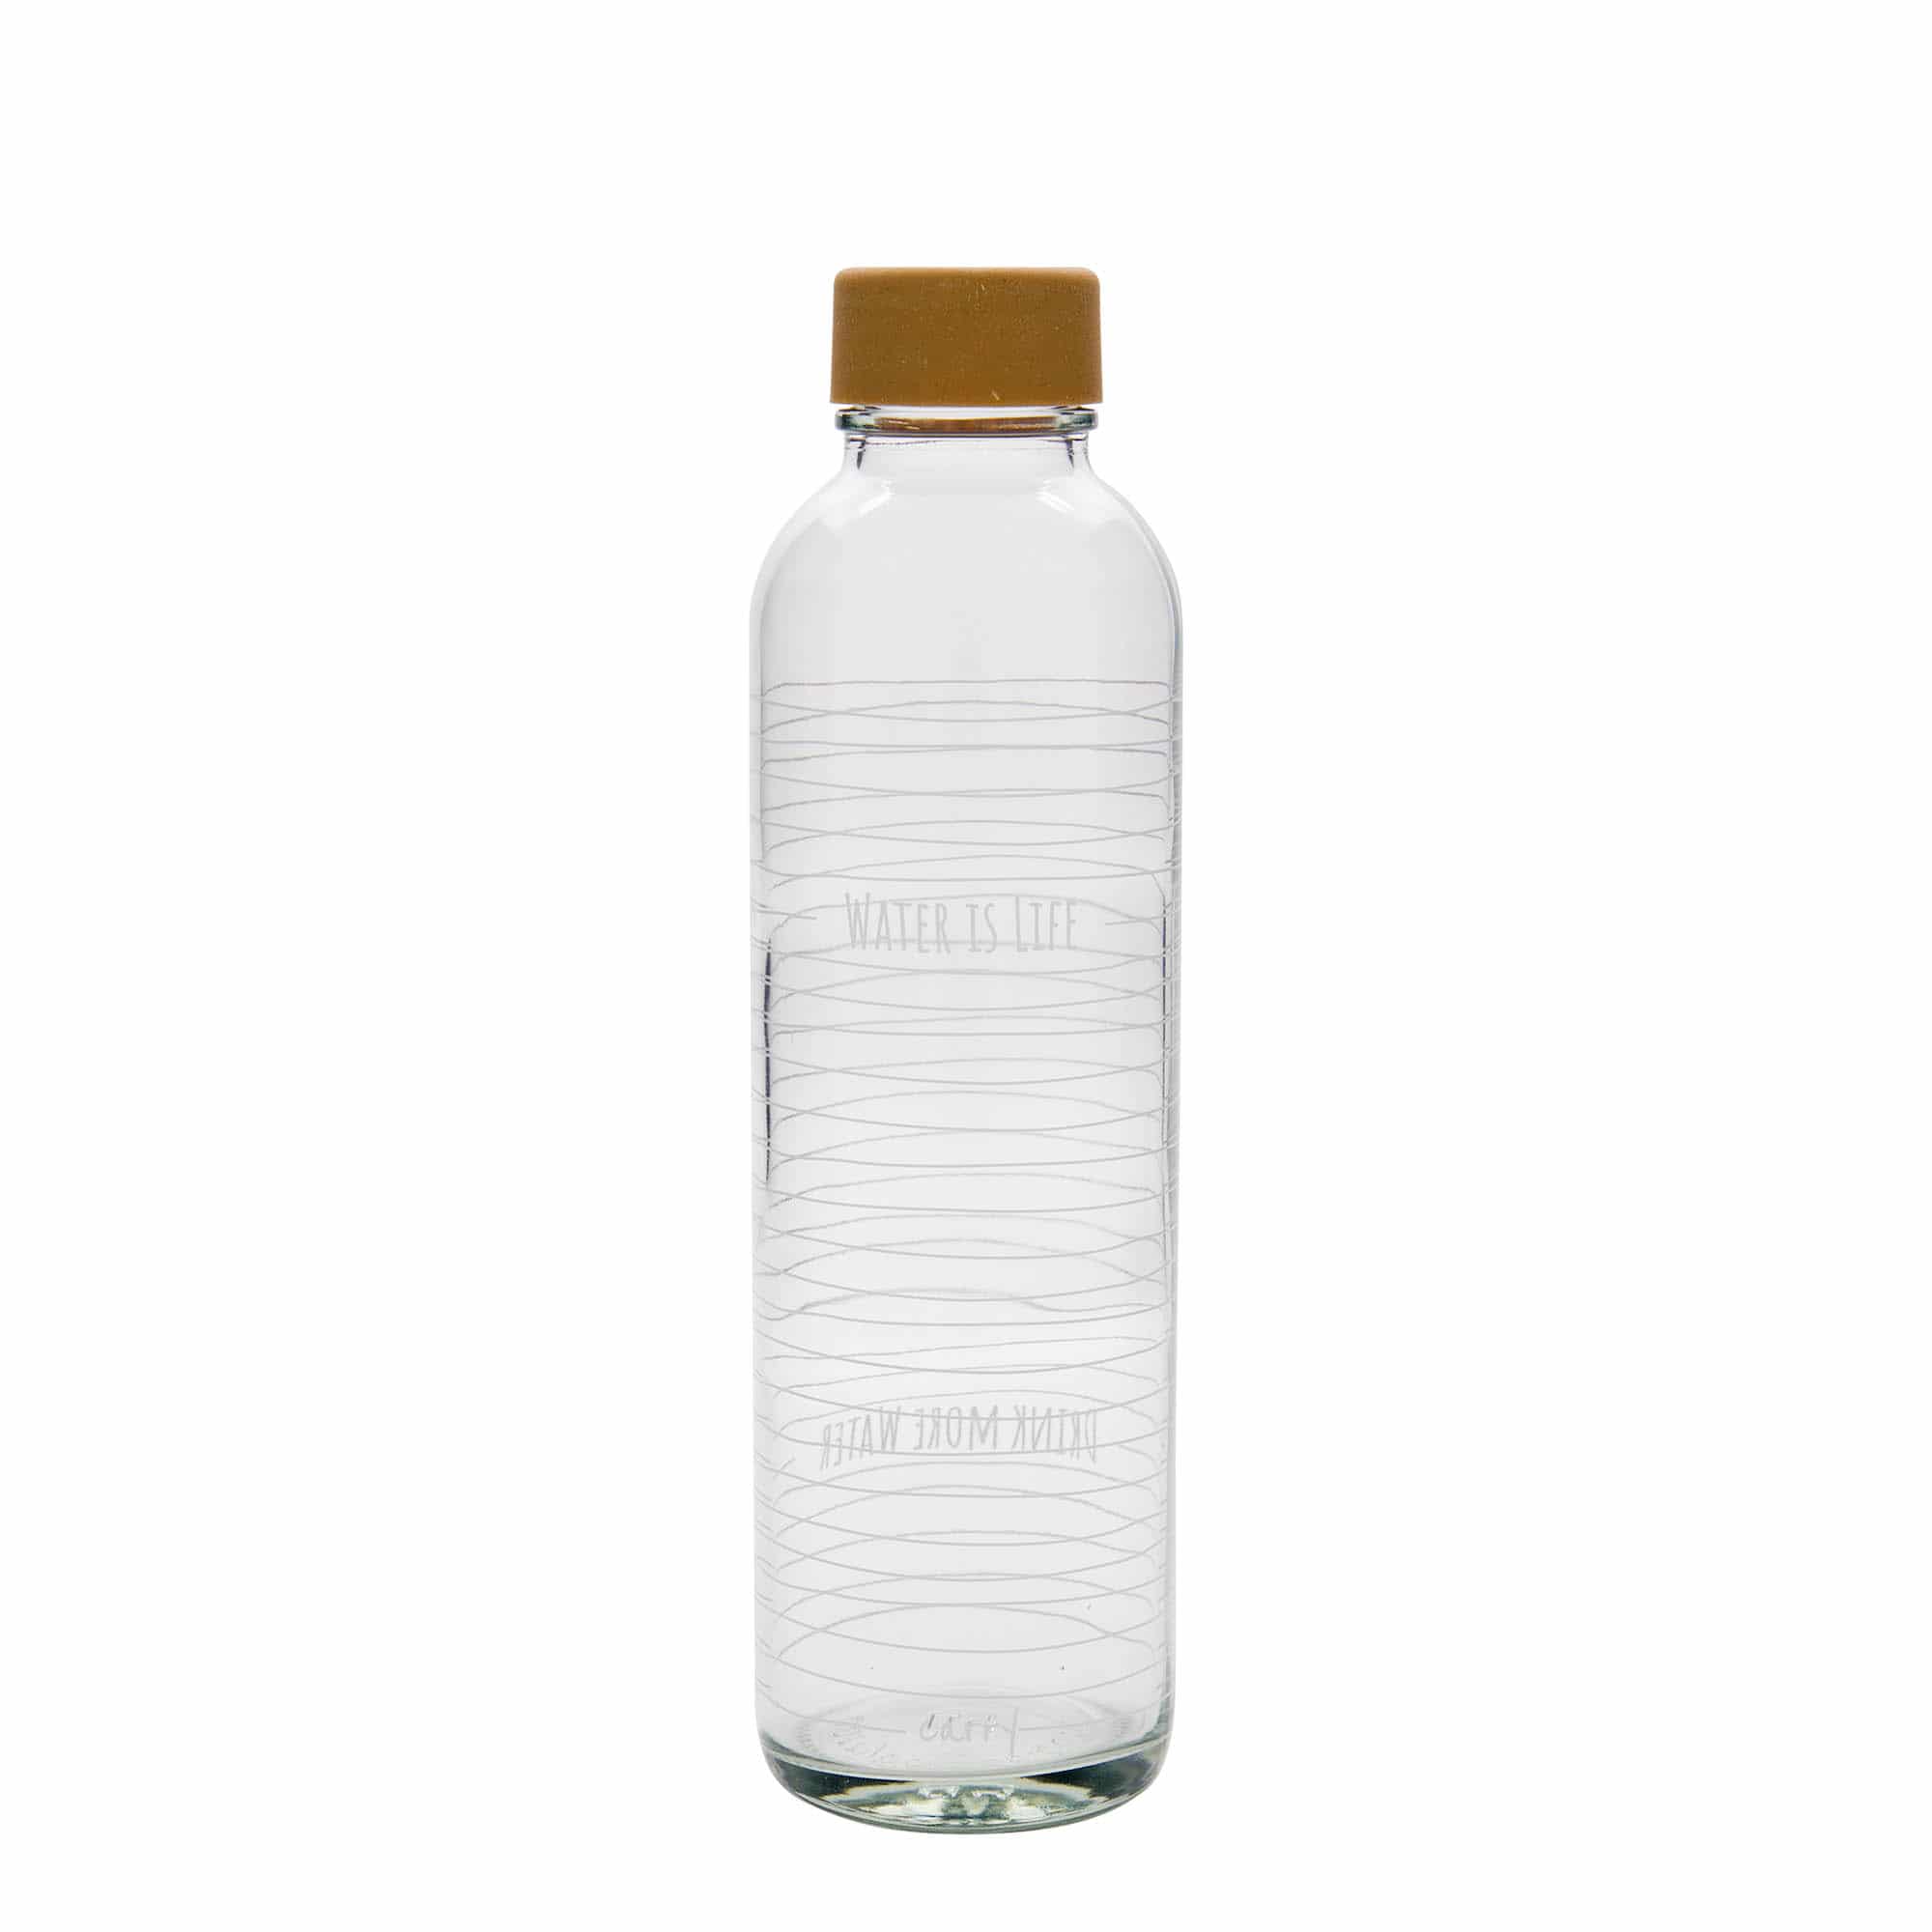 700 ml juomapullo CARRY Bottle, kuvio: Water is Life, suu: Kierrekorkki